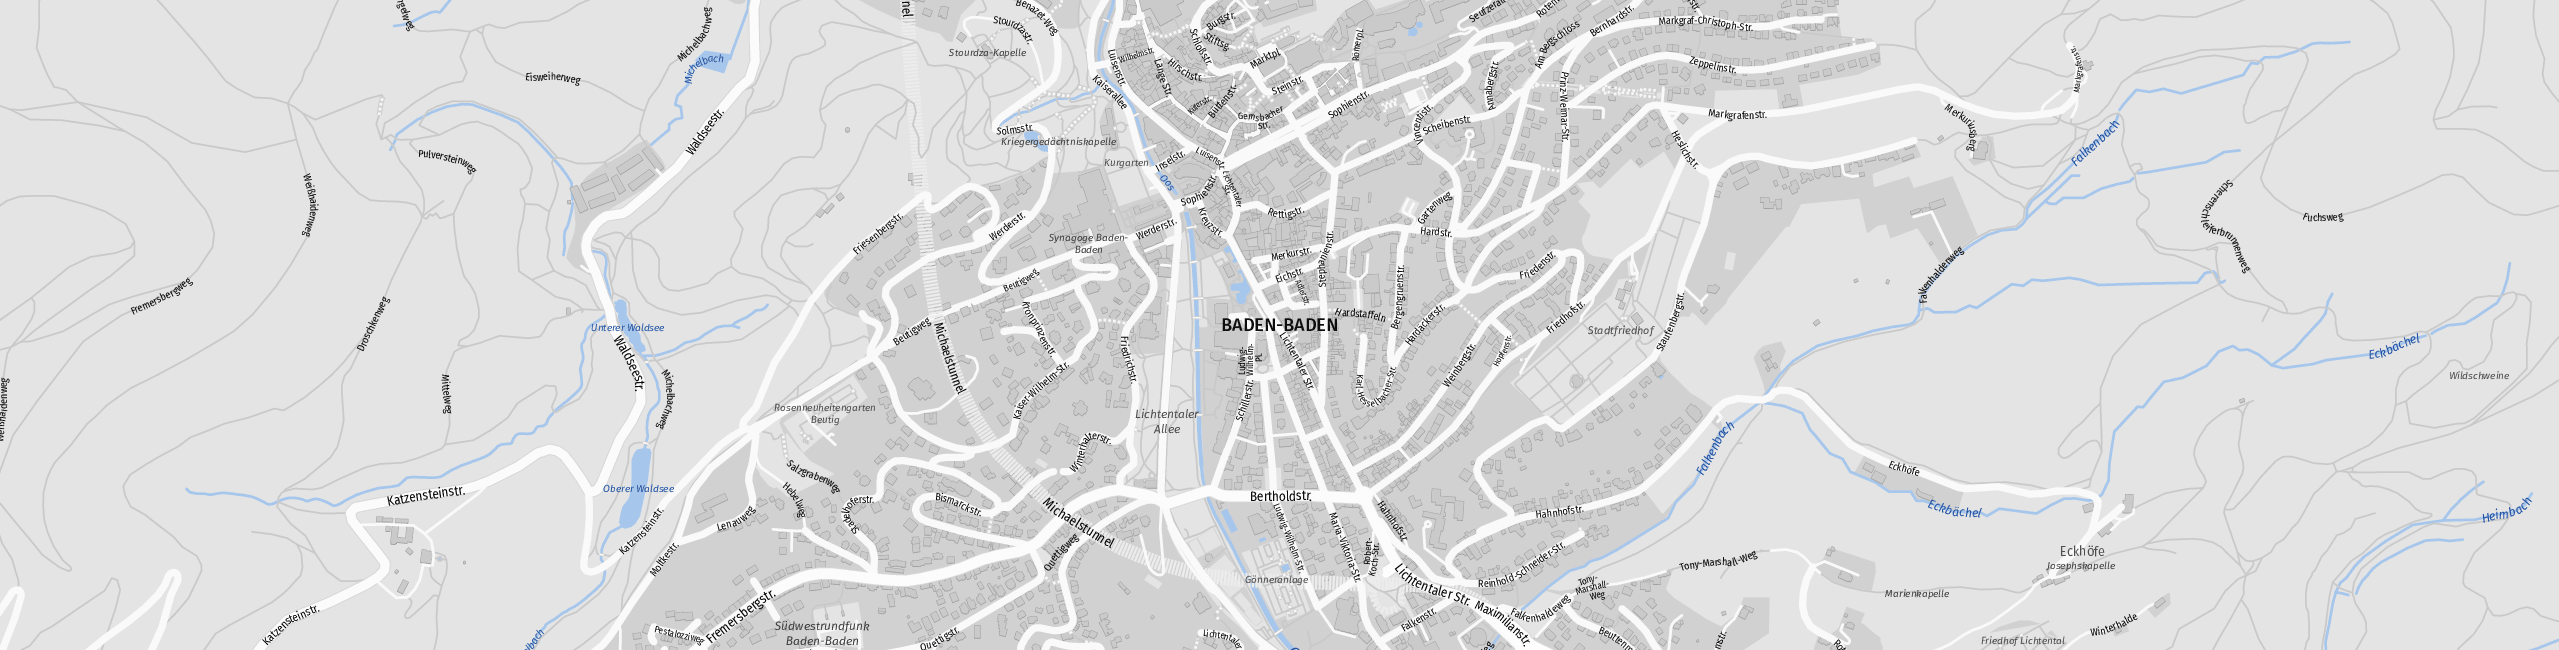 Stadtplan Baden-Baden zum Downloaden.